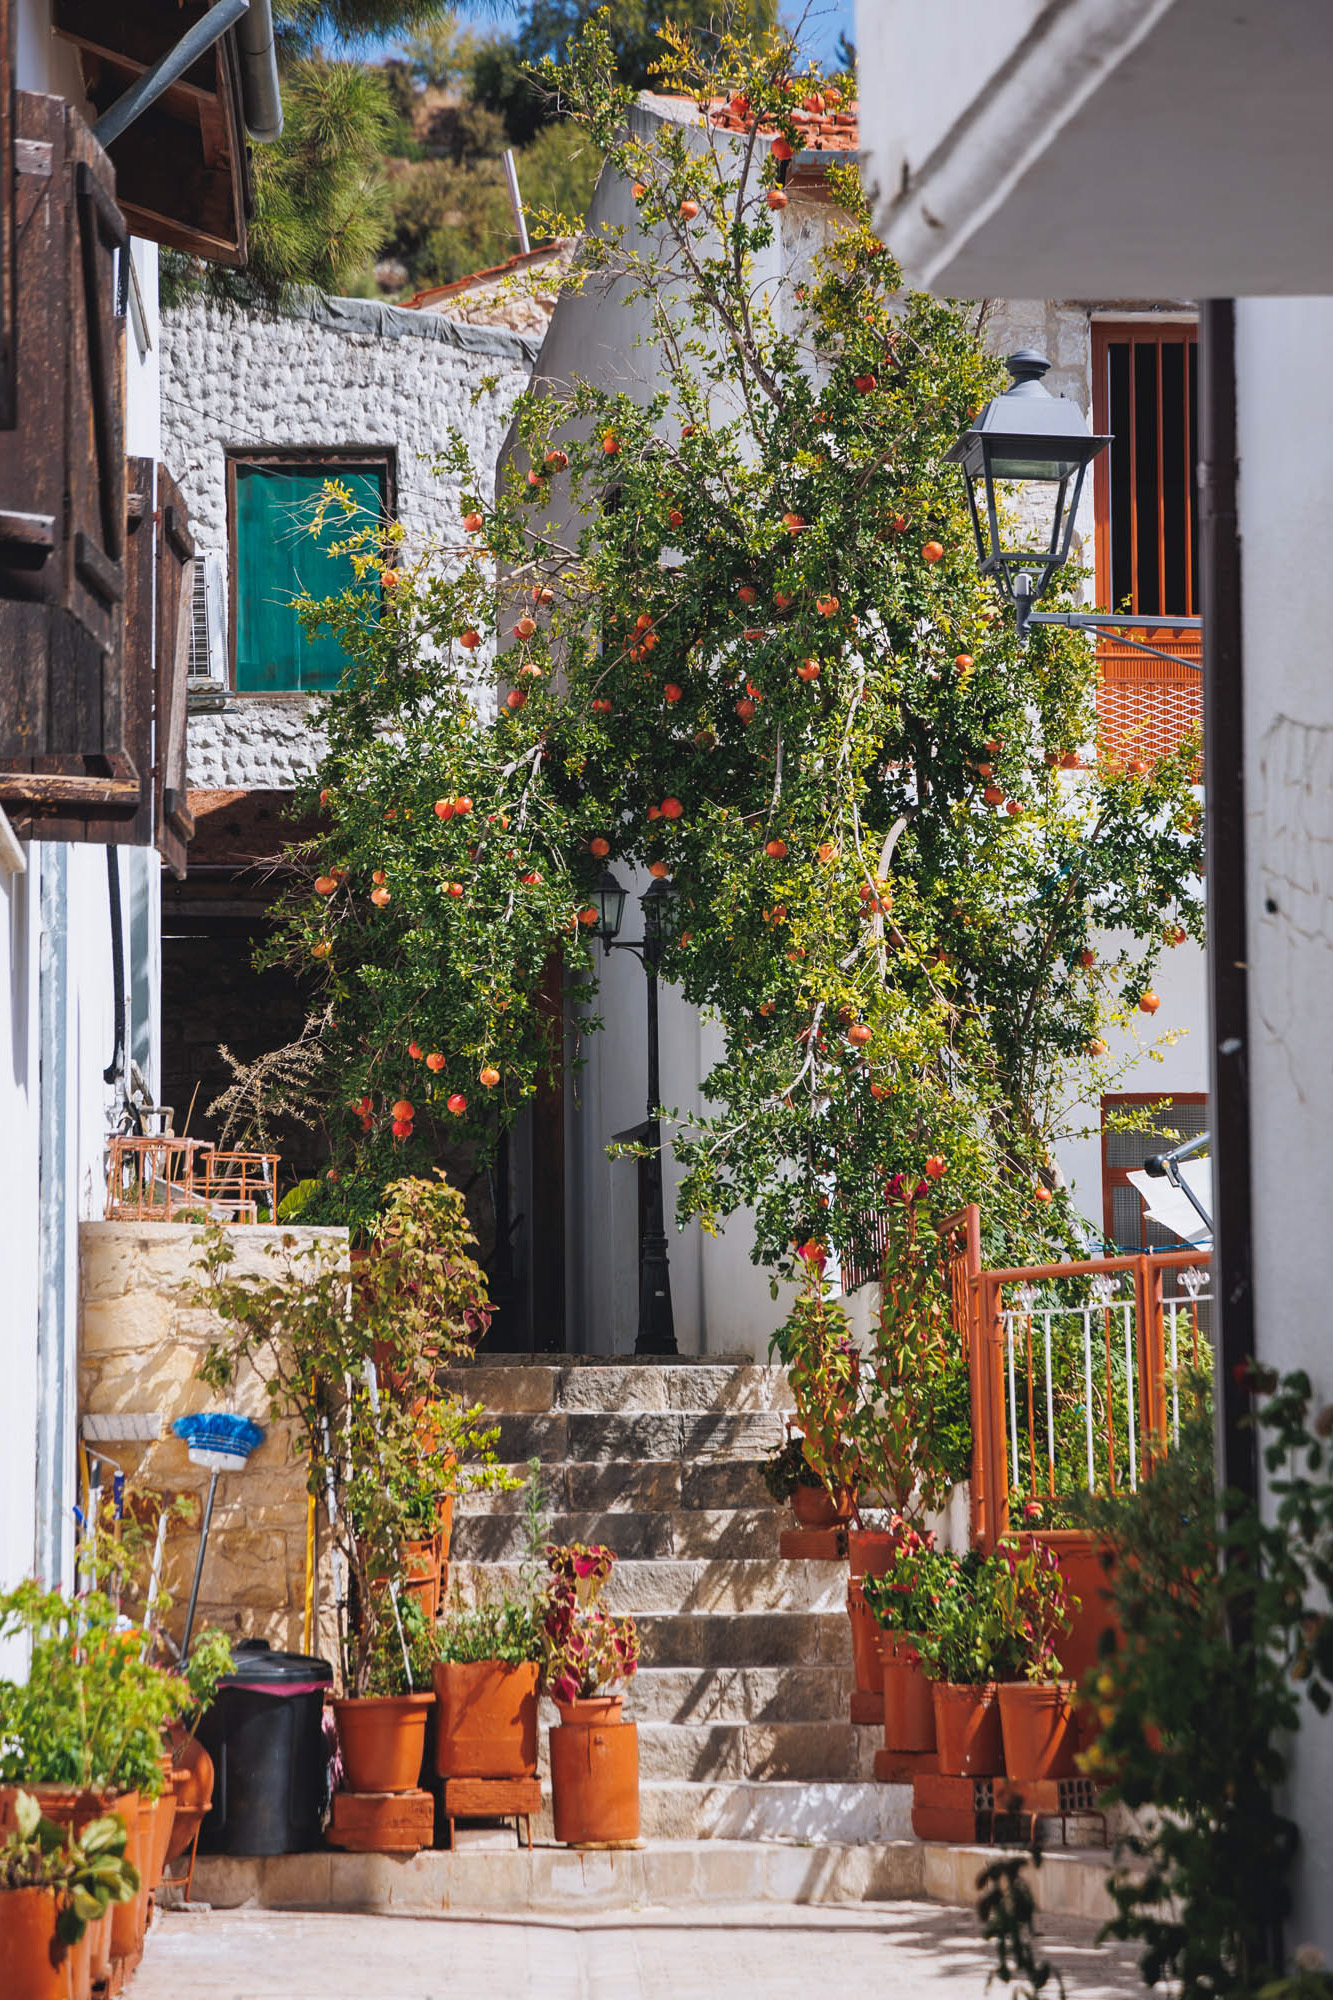 drzewo granatu we wsi arsos na cyprze. wejście do jednego z domów obsadzone kwiatami